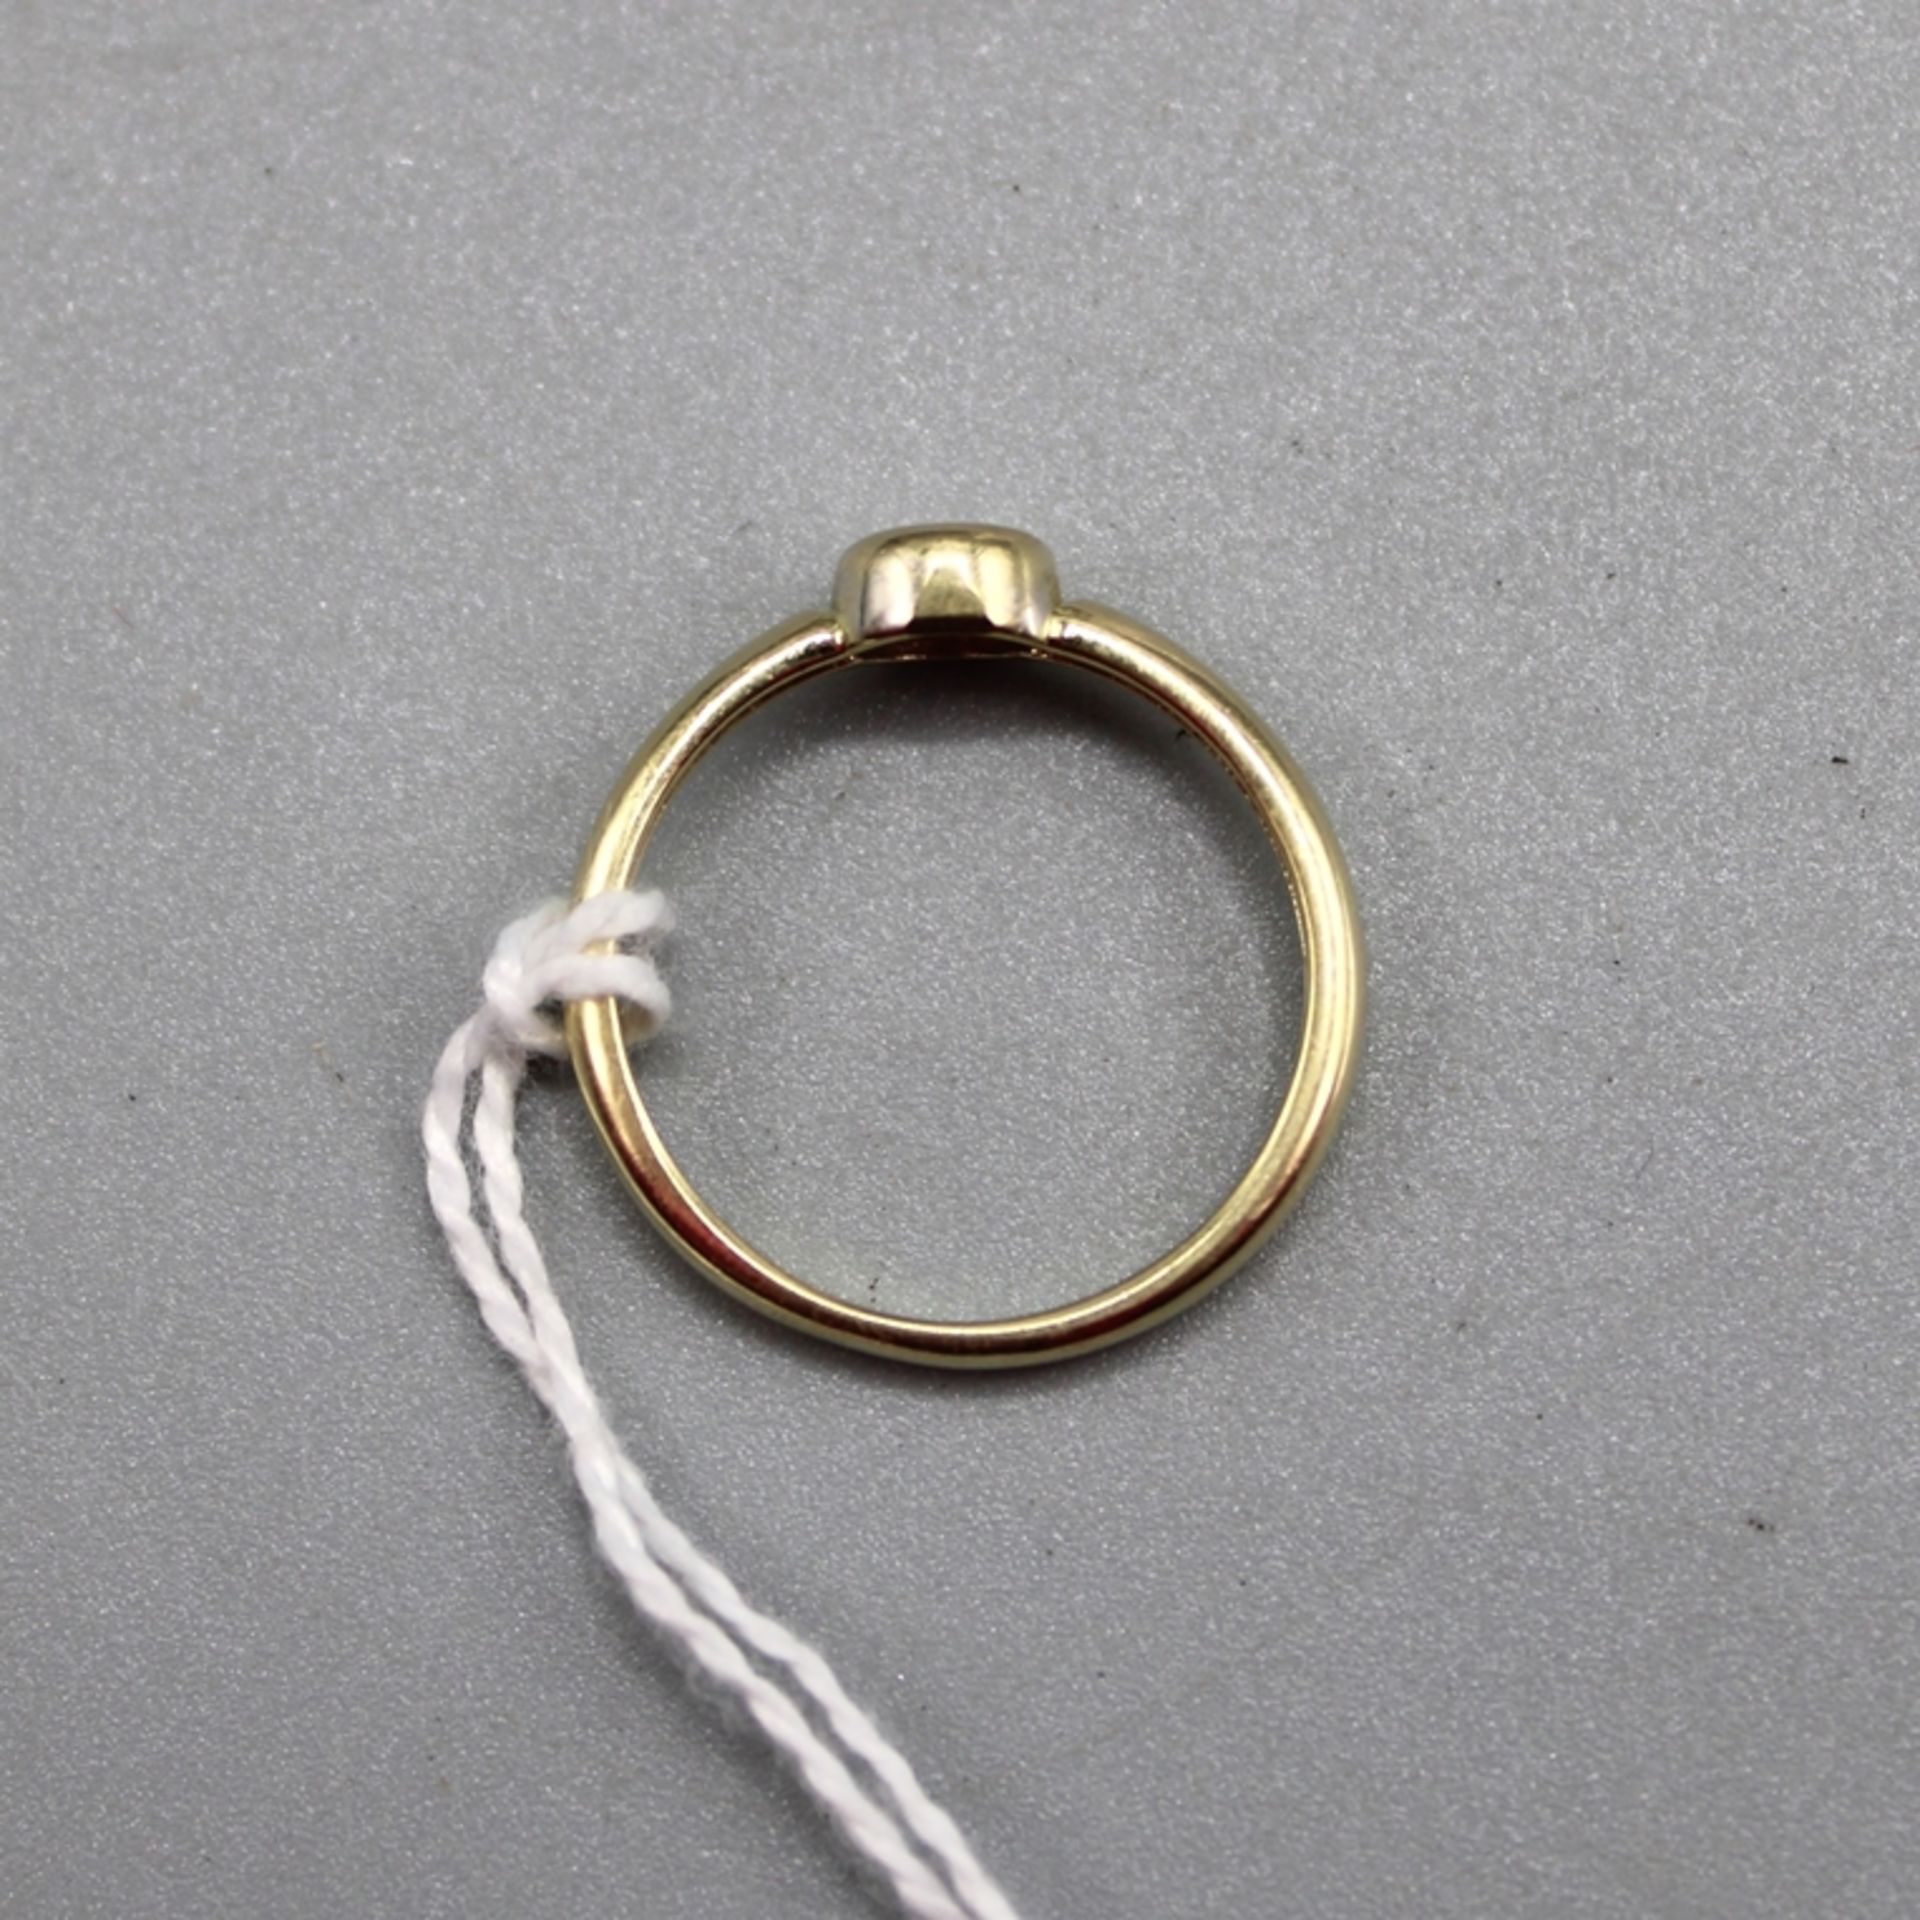 Brillantring 0,1 ct. Gold 585, Ring Ø ca. 17 mm, 2 g - Bild 2 aus 2